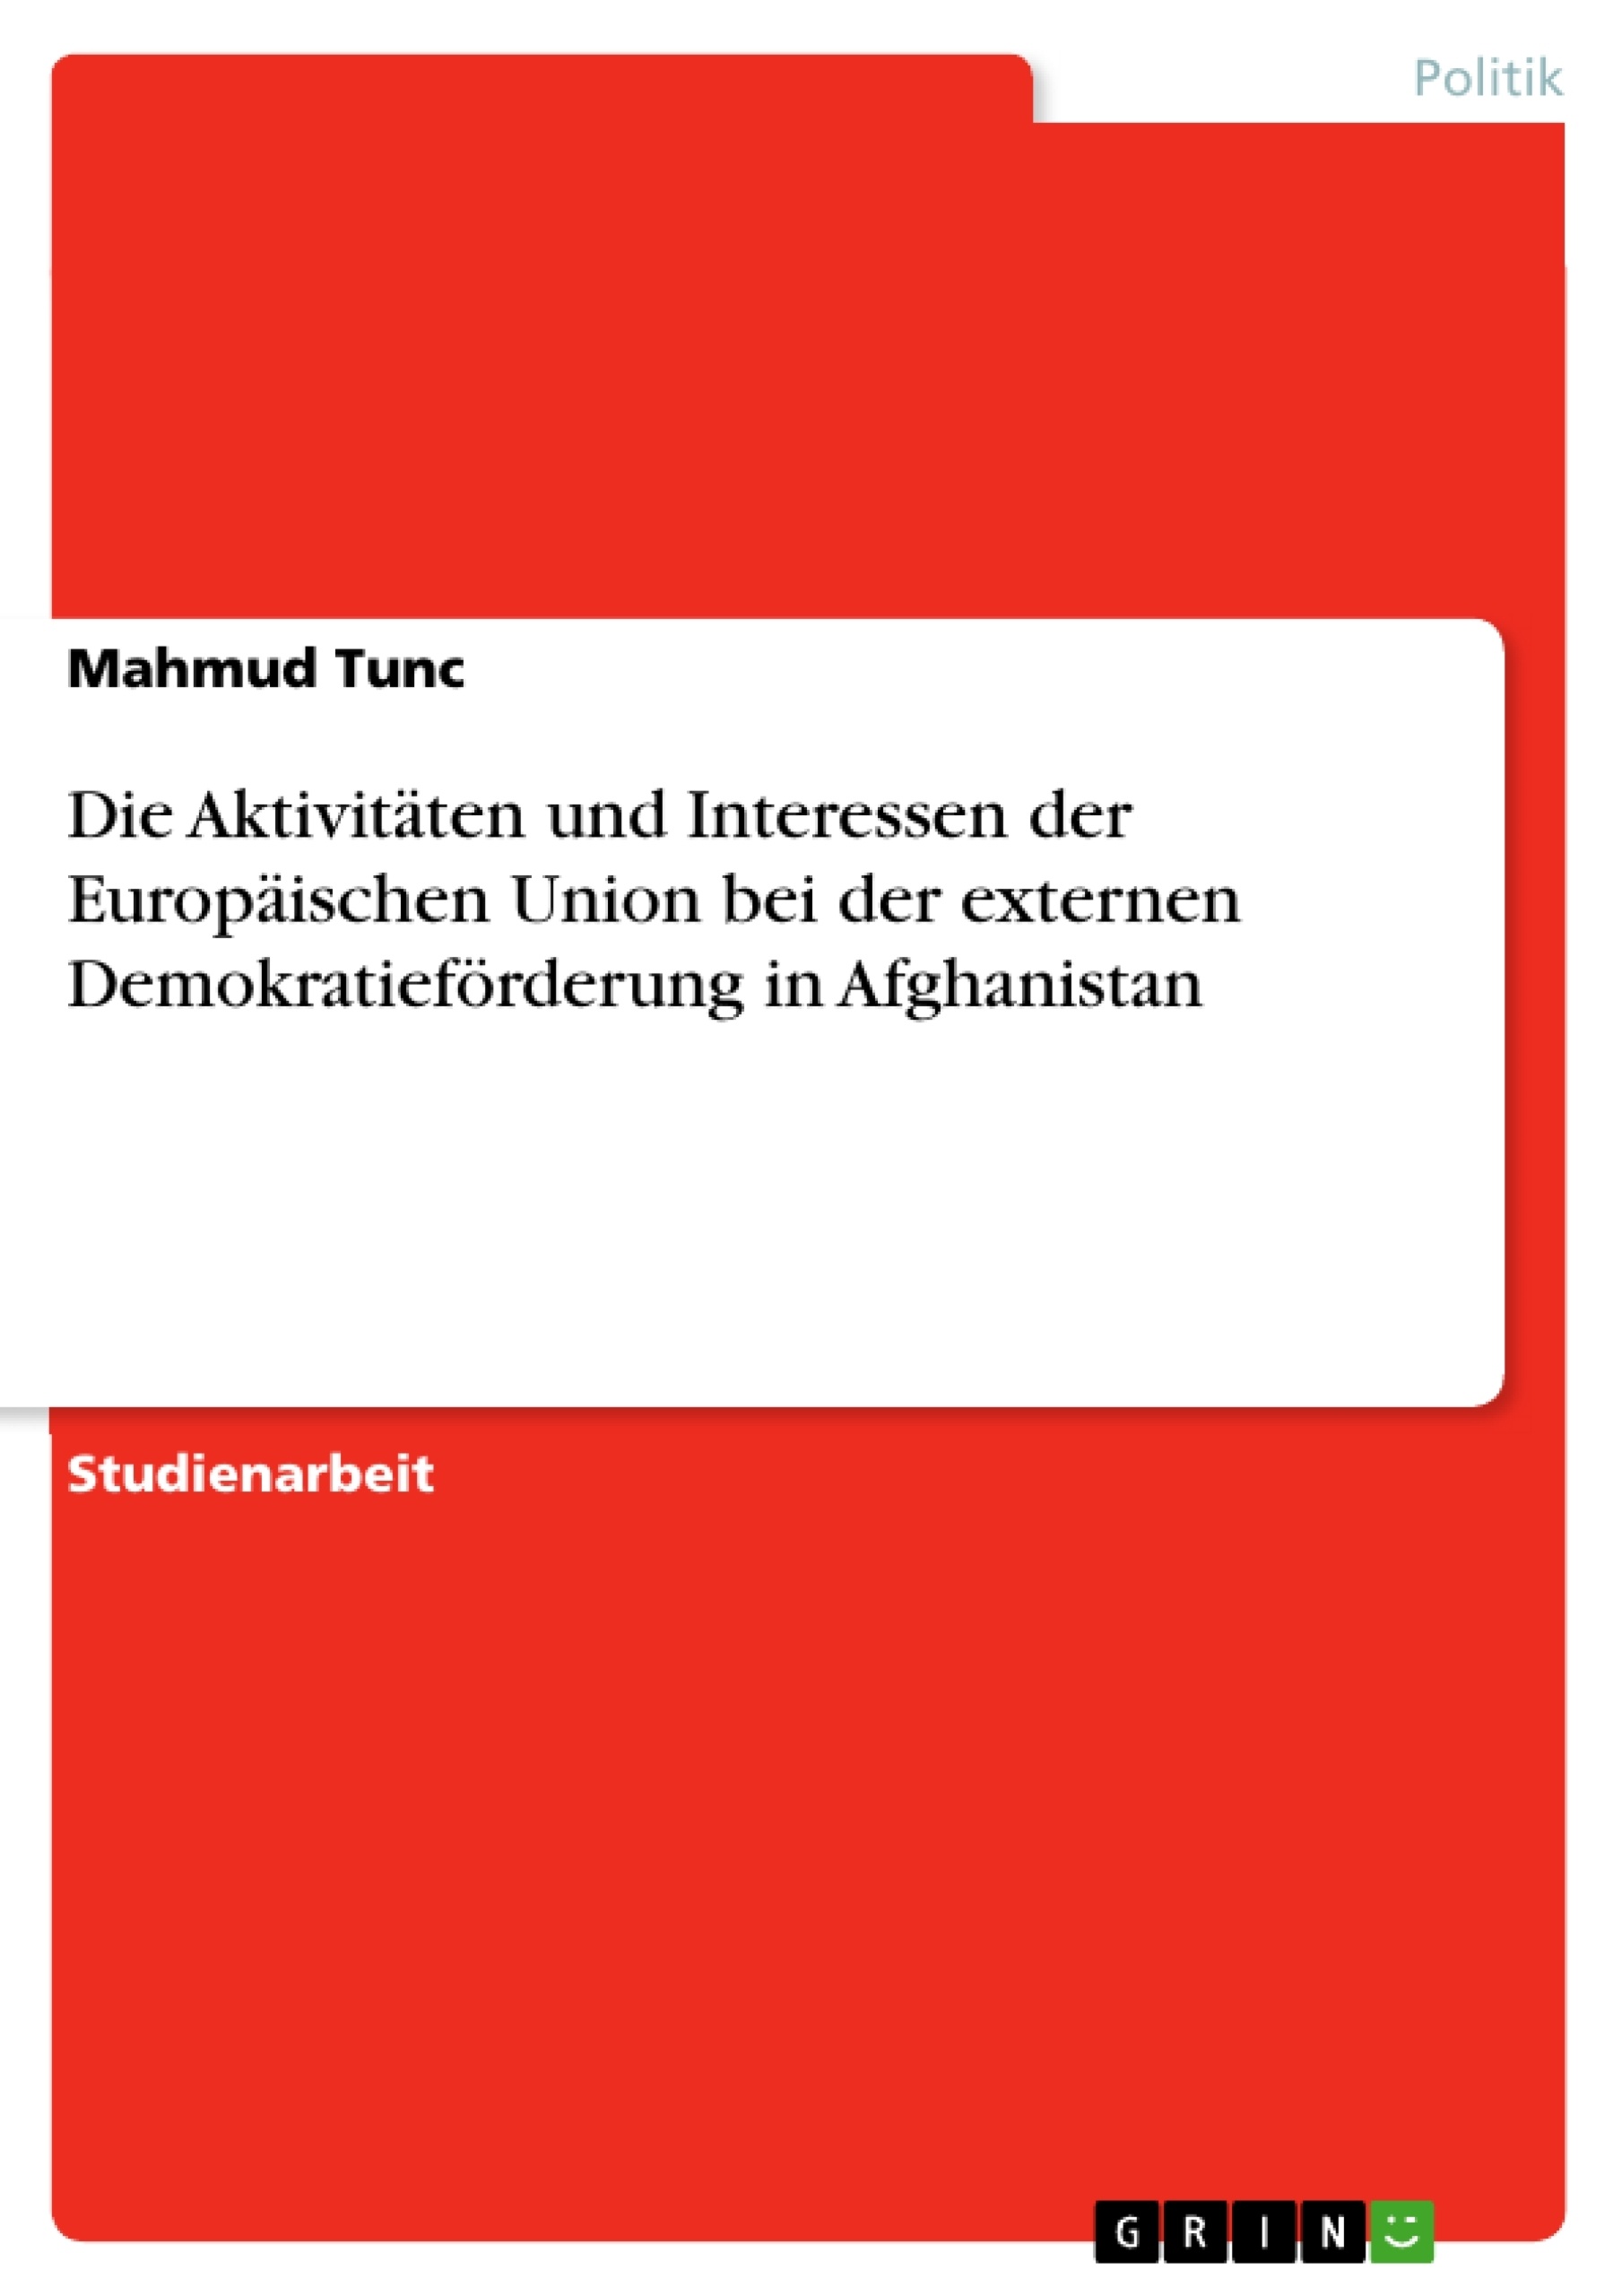 Title: Die Aktivitäten und Interessen der Europäischen Union bei der externen Demokratieförderung in Afghanistan